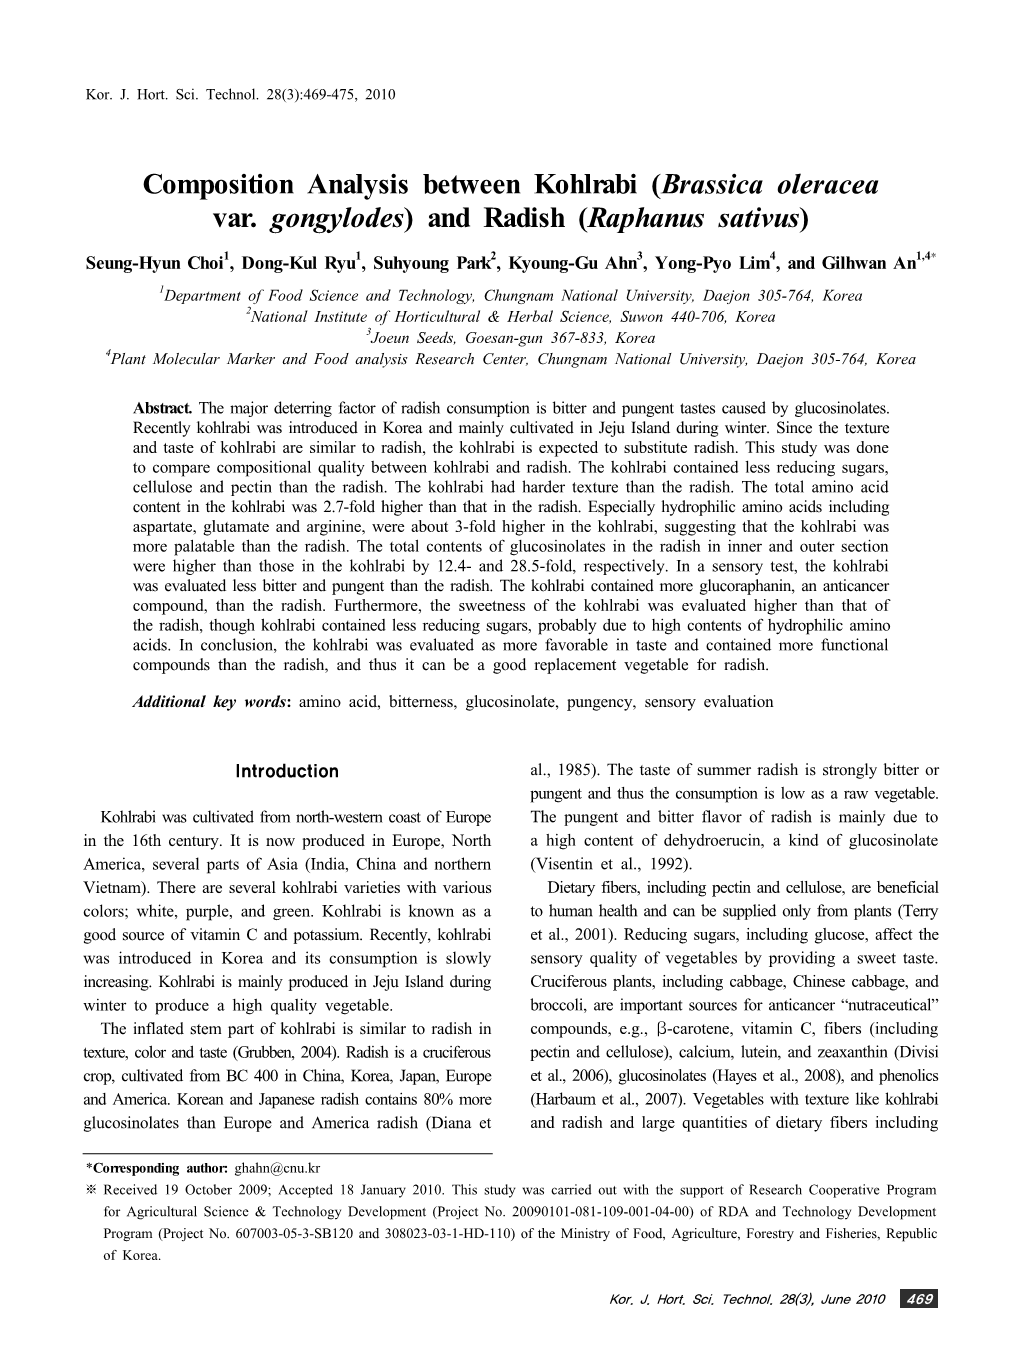 Composition Analysis Between Kohlrabi (Brassica Oleracea Var